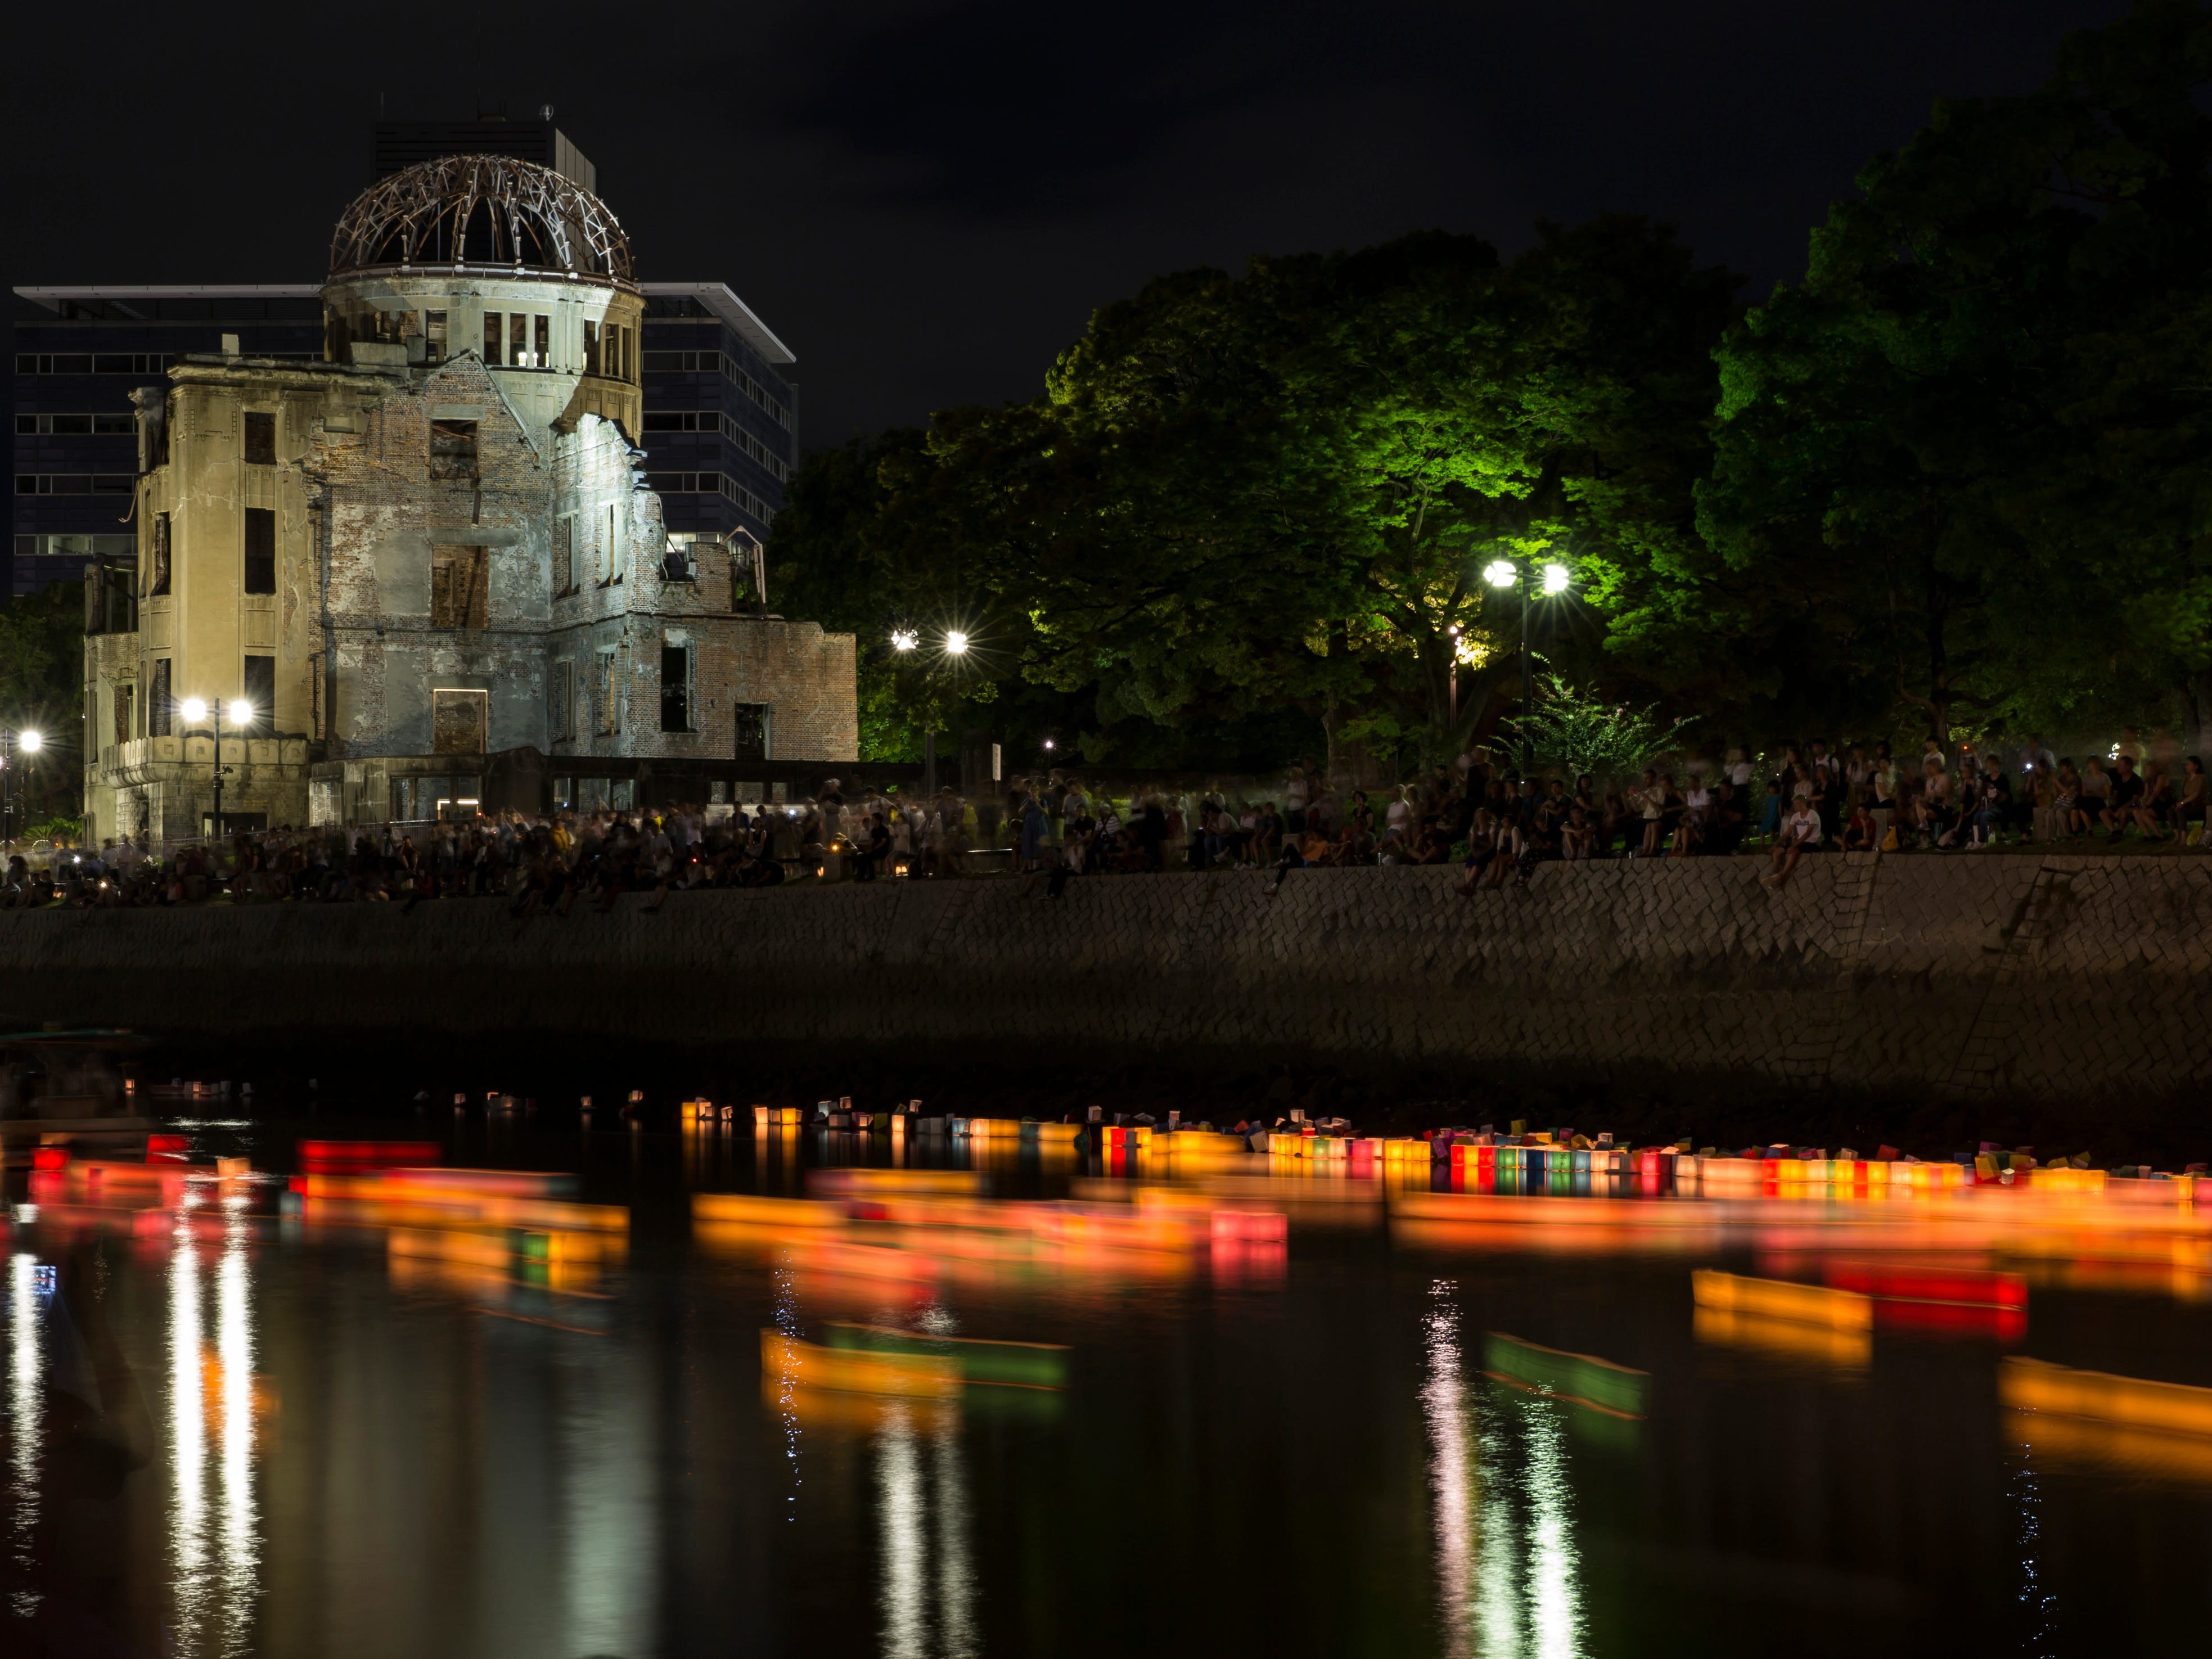 Während einer Veranstaltung zum Gedenken an den 74. Jahrestag des Atombombenabwurfs auf Hiroshima im Hiroshima Peace Memorial Park sind auf dem Fluss Papierlaternen mit Kerzenschein zu sehen